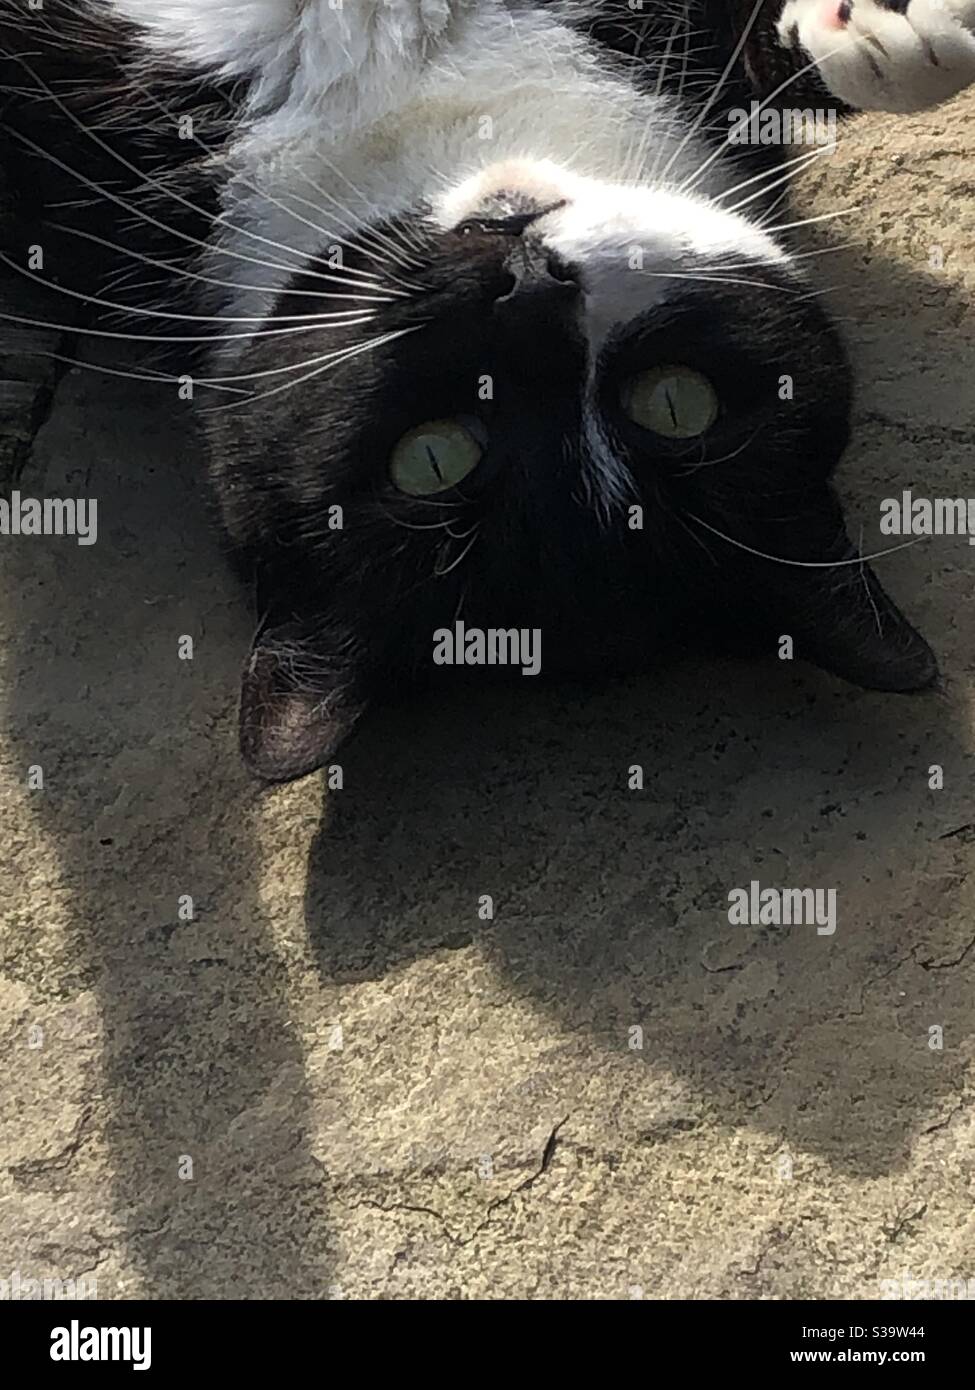 Schwarz-weiße Katze, verspielte, grüne Augen, Schnurrhaare, Sonnenschein Stockfoto